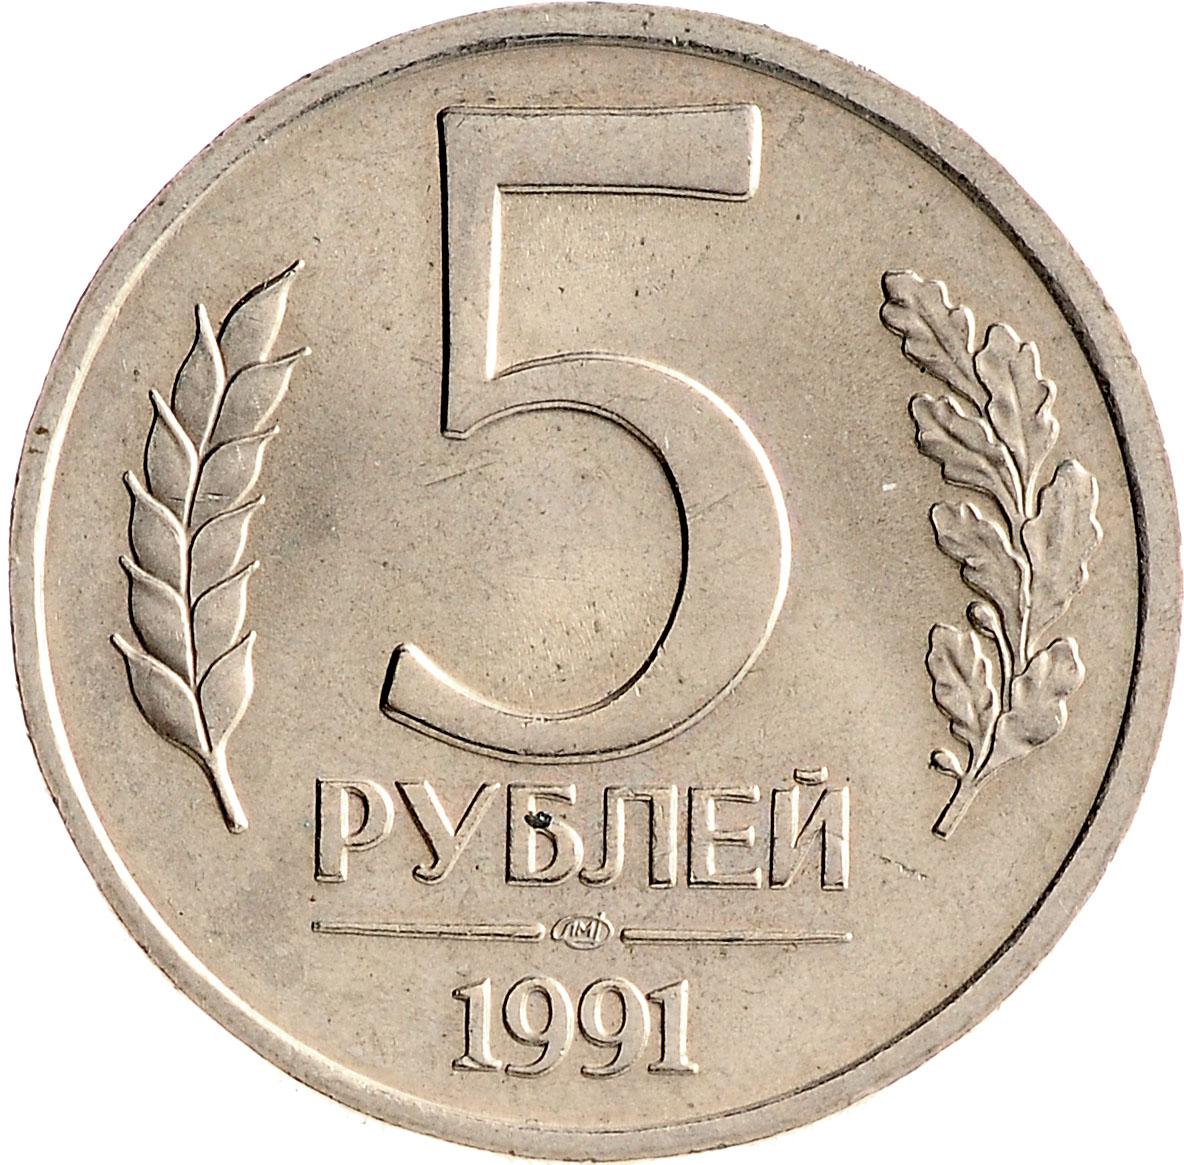 Продаются за 5 рублей. 5 Рублей 1991 ММД ЛМД. 5 Рублей 1991 ММД или ЛМД. Монета 5 рублей 1991 ЛМД. 5 Рублей 1991 года ЛМД.